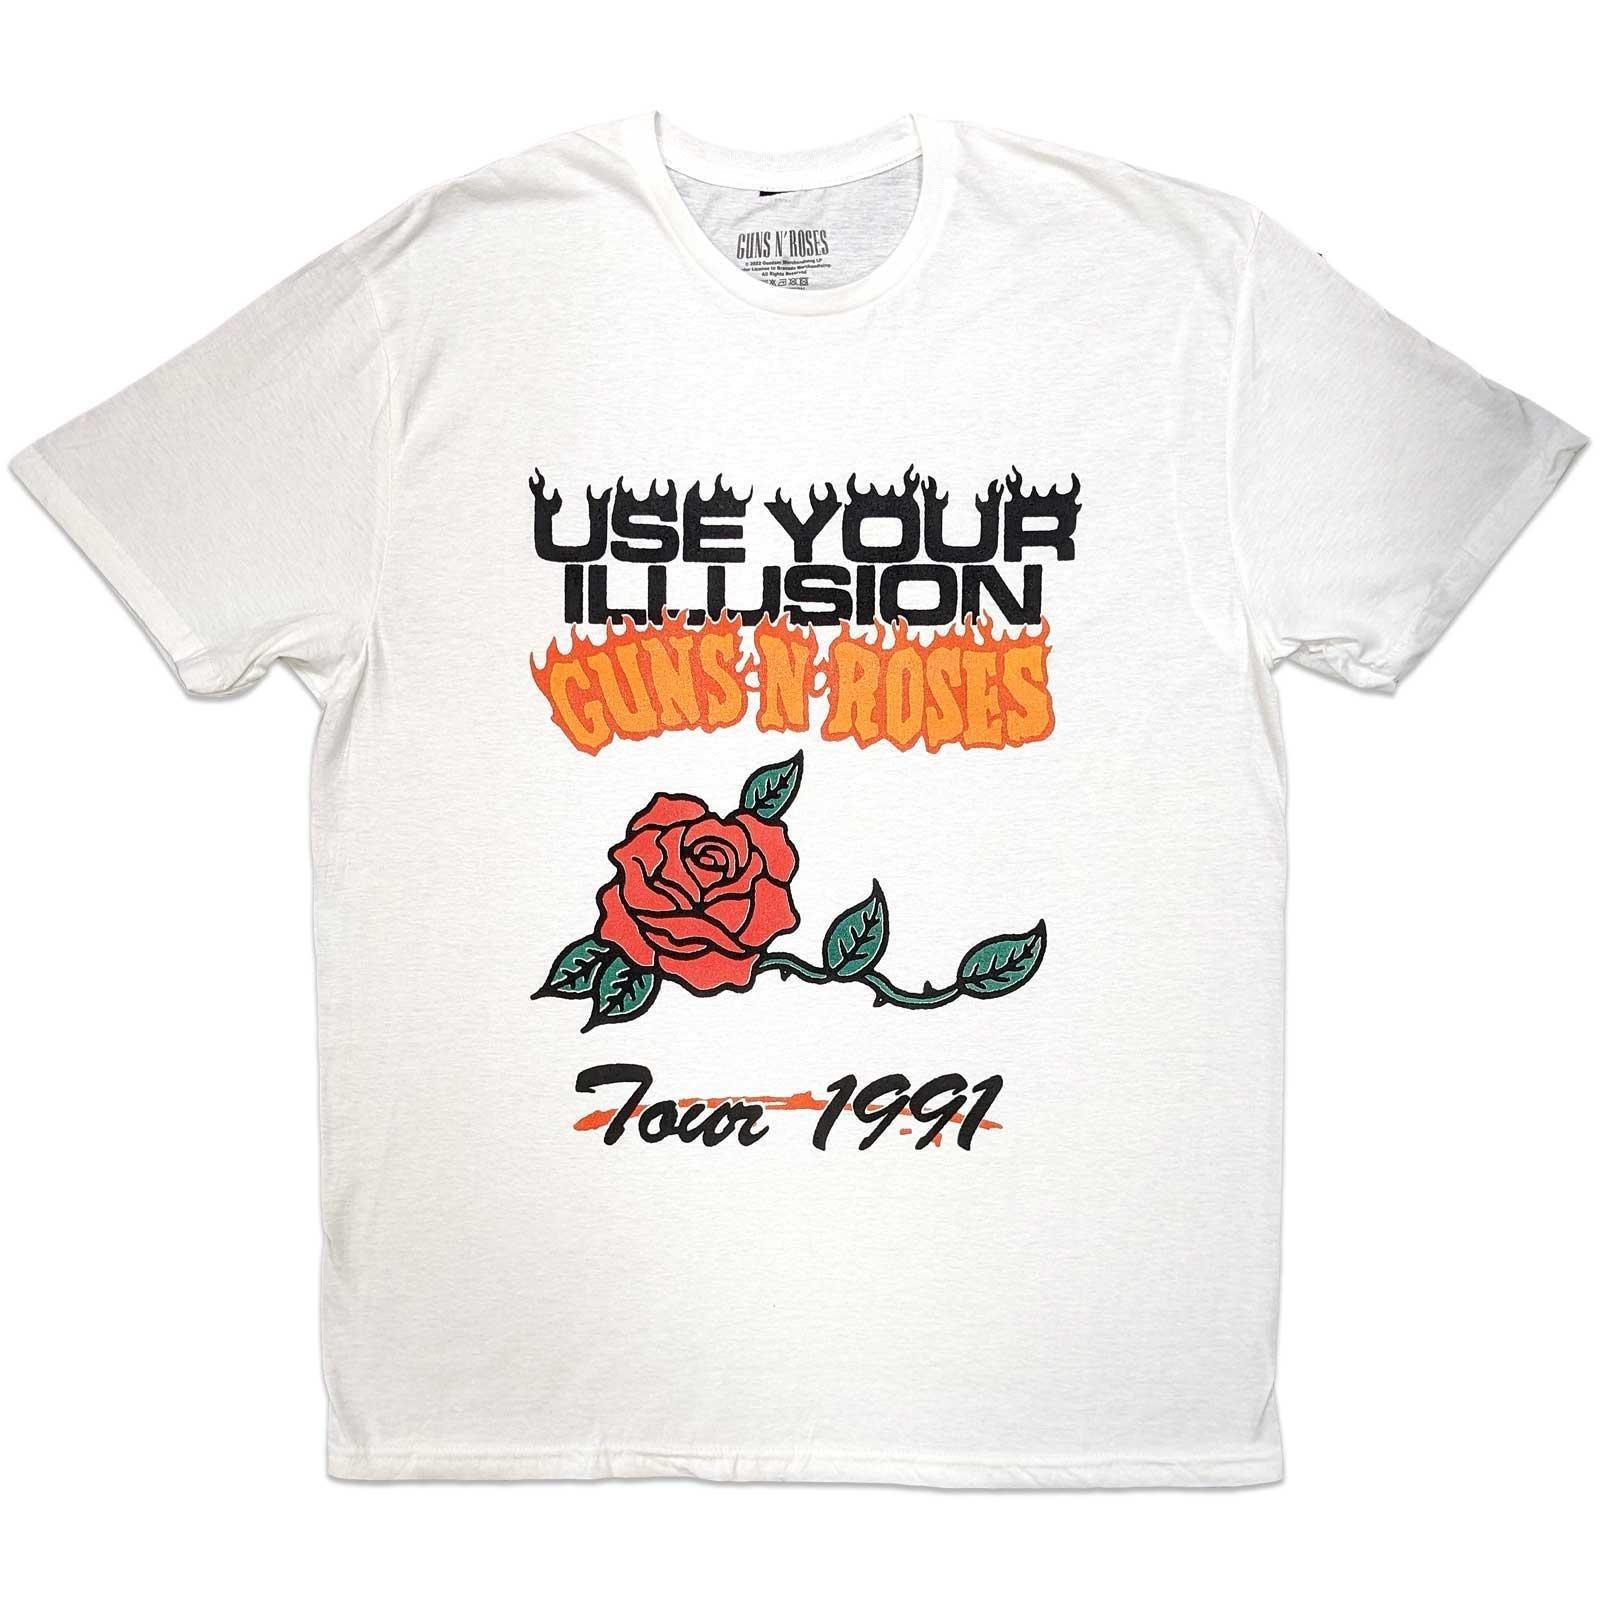 Use Your Illusion Tour 1991 Tshirt Damen Weiss XL von Guns N Roses